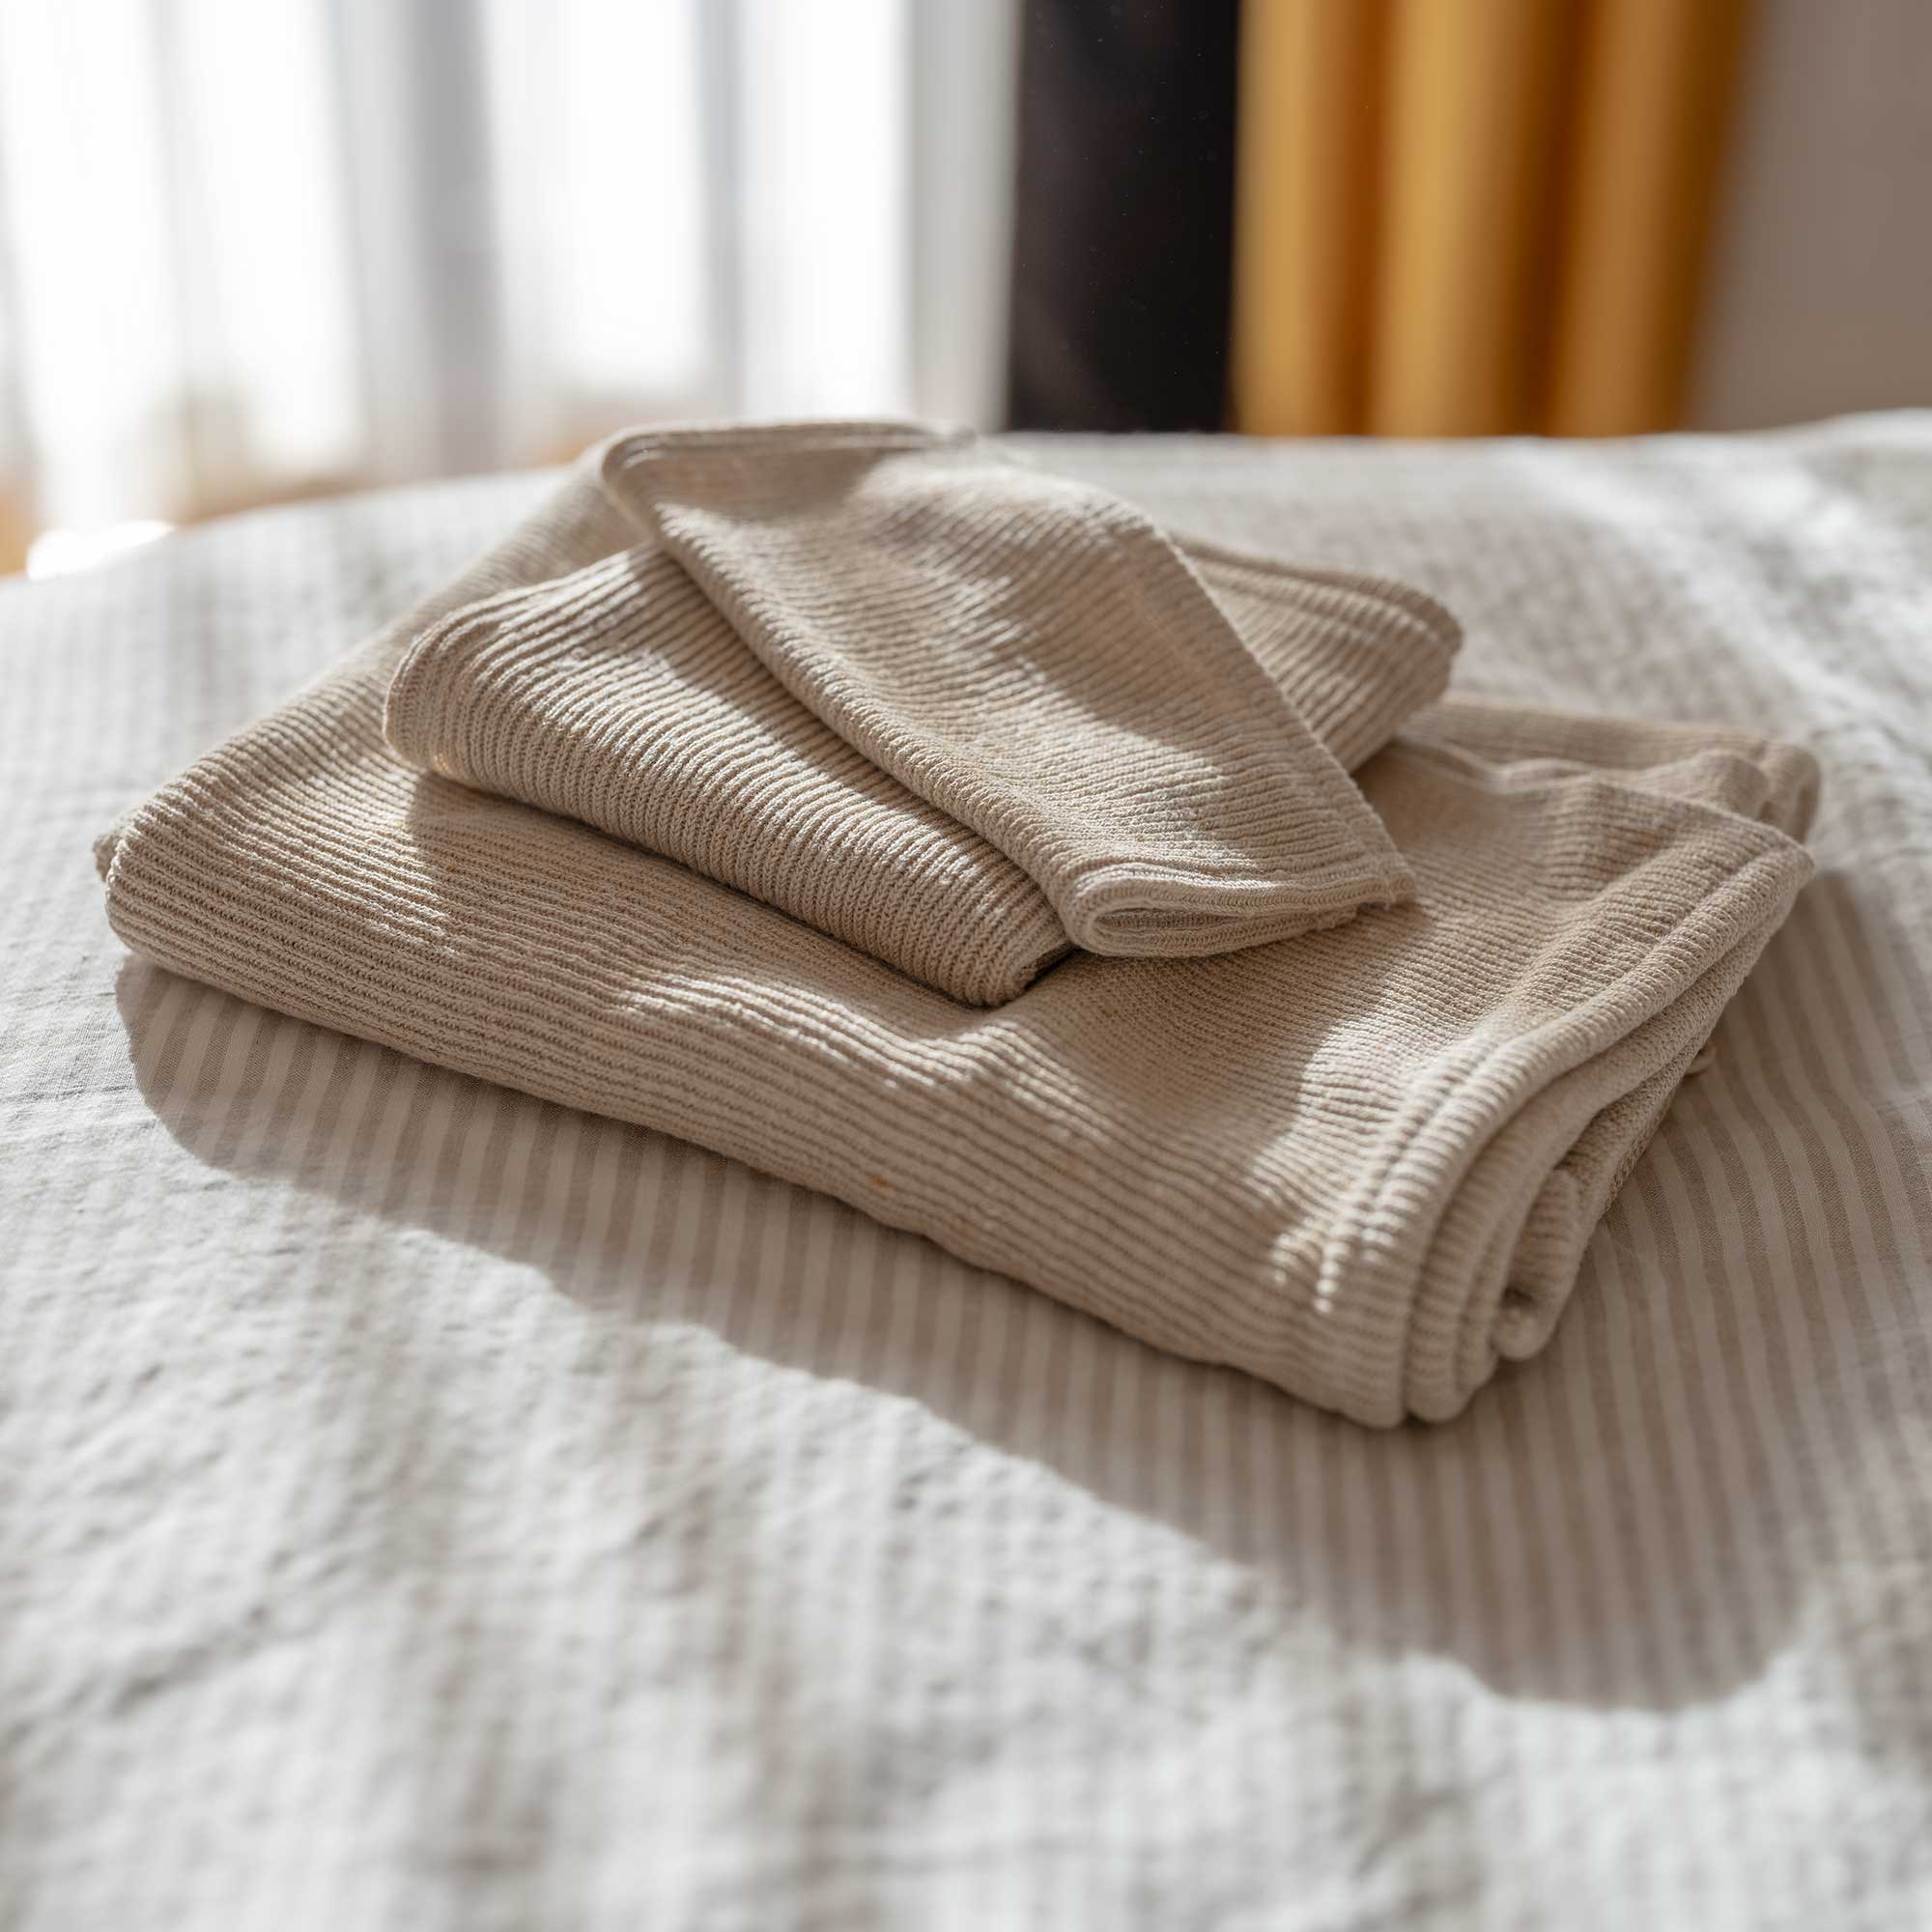 UNBLEACHED Natural Linen Bath Towel. Face, Hand, Body Towel SET